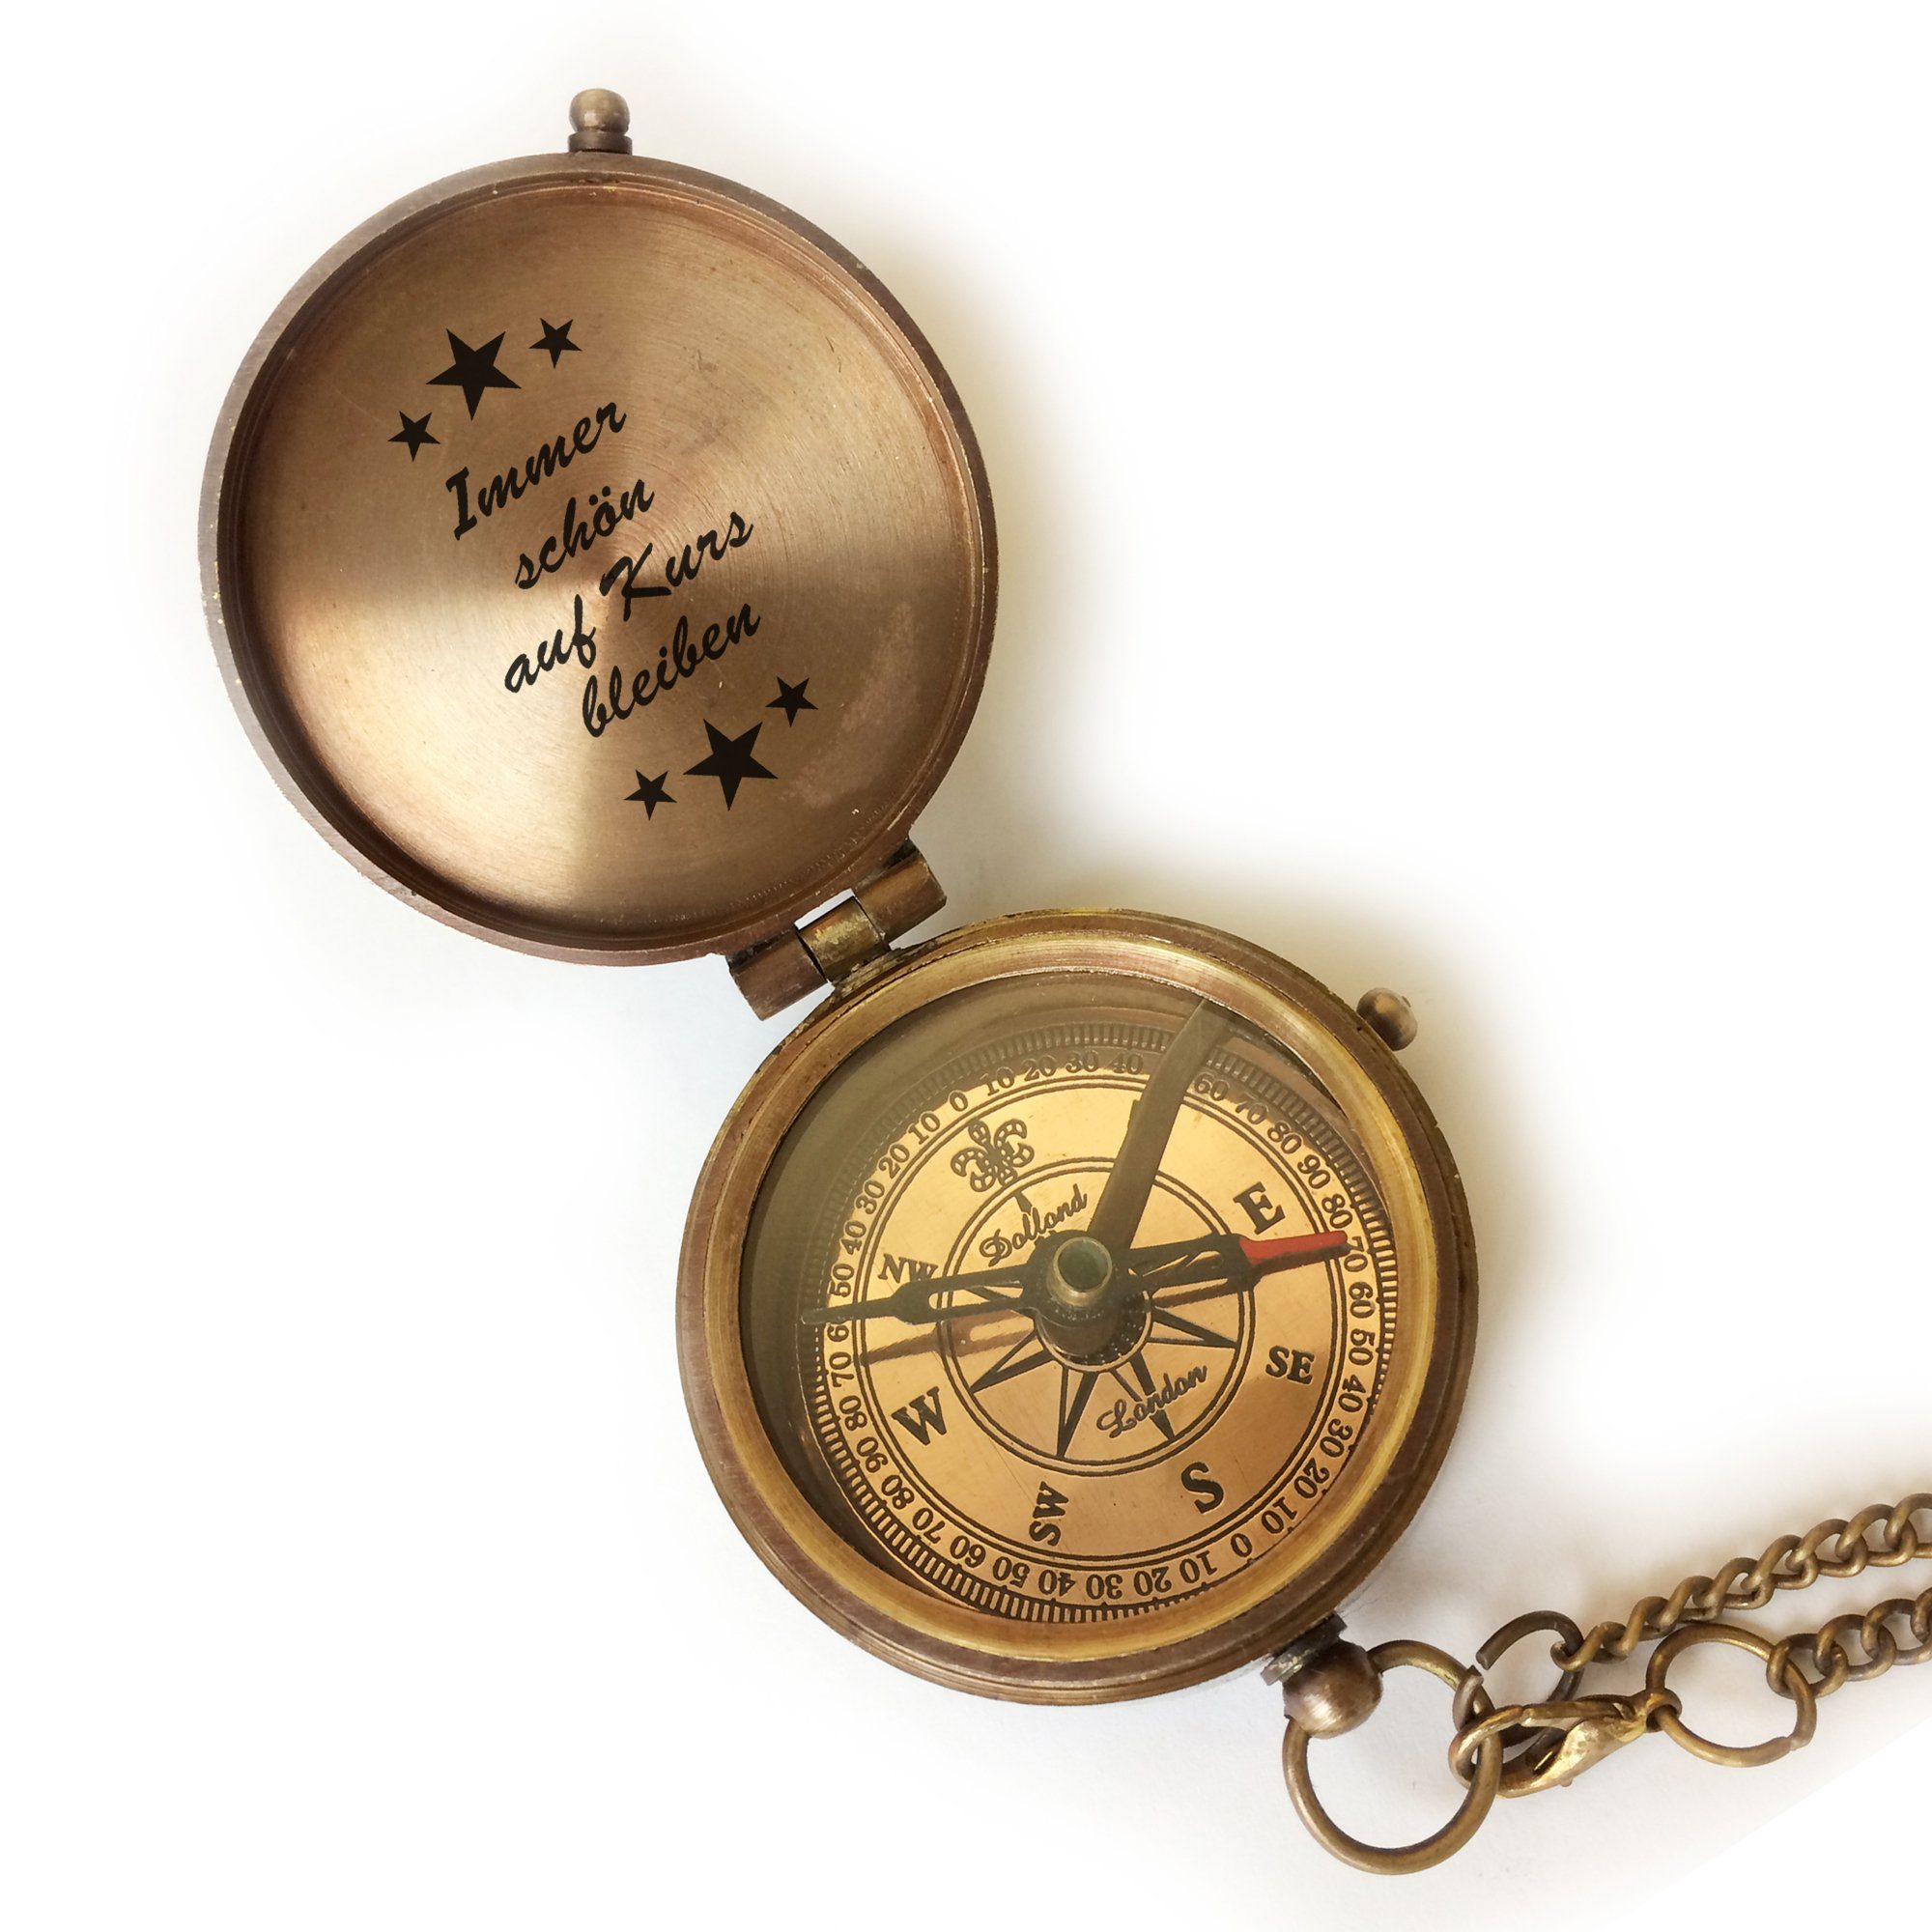 Kompass verschiedene "Kurs" oder Anlässe mit Vintage mit Geschenkidee Gravur Messing ohne Ledertasche Designs Optik Motiv Kompass Geschenkbox elbedruck tolle